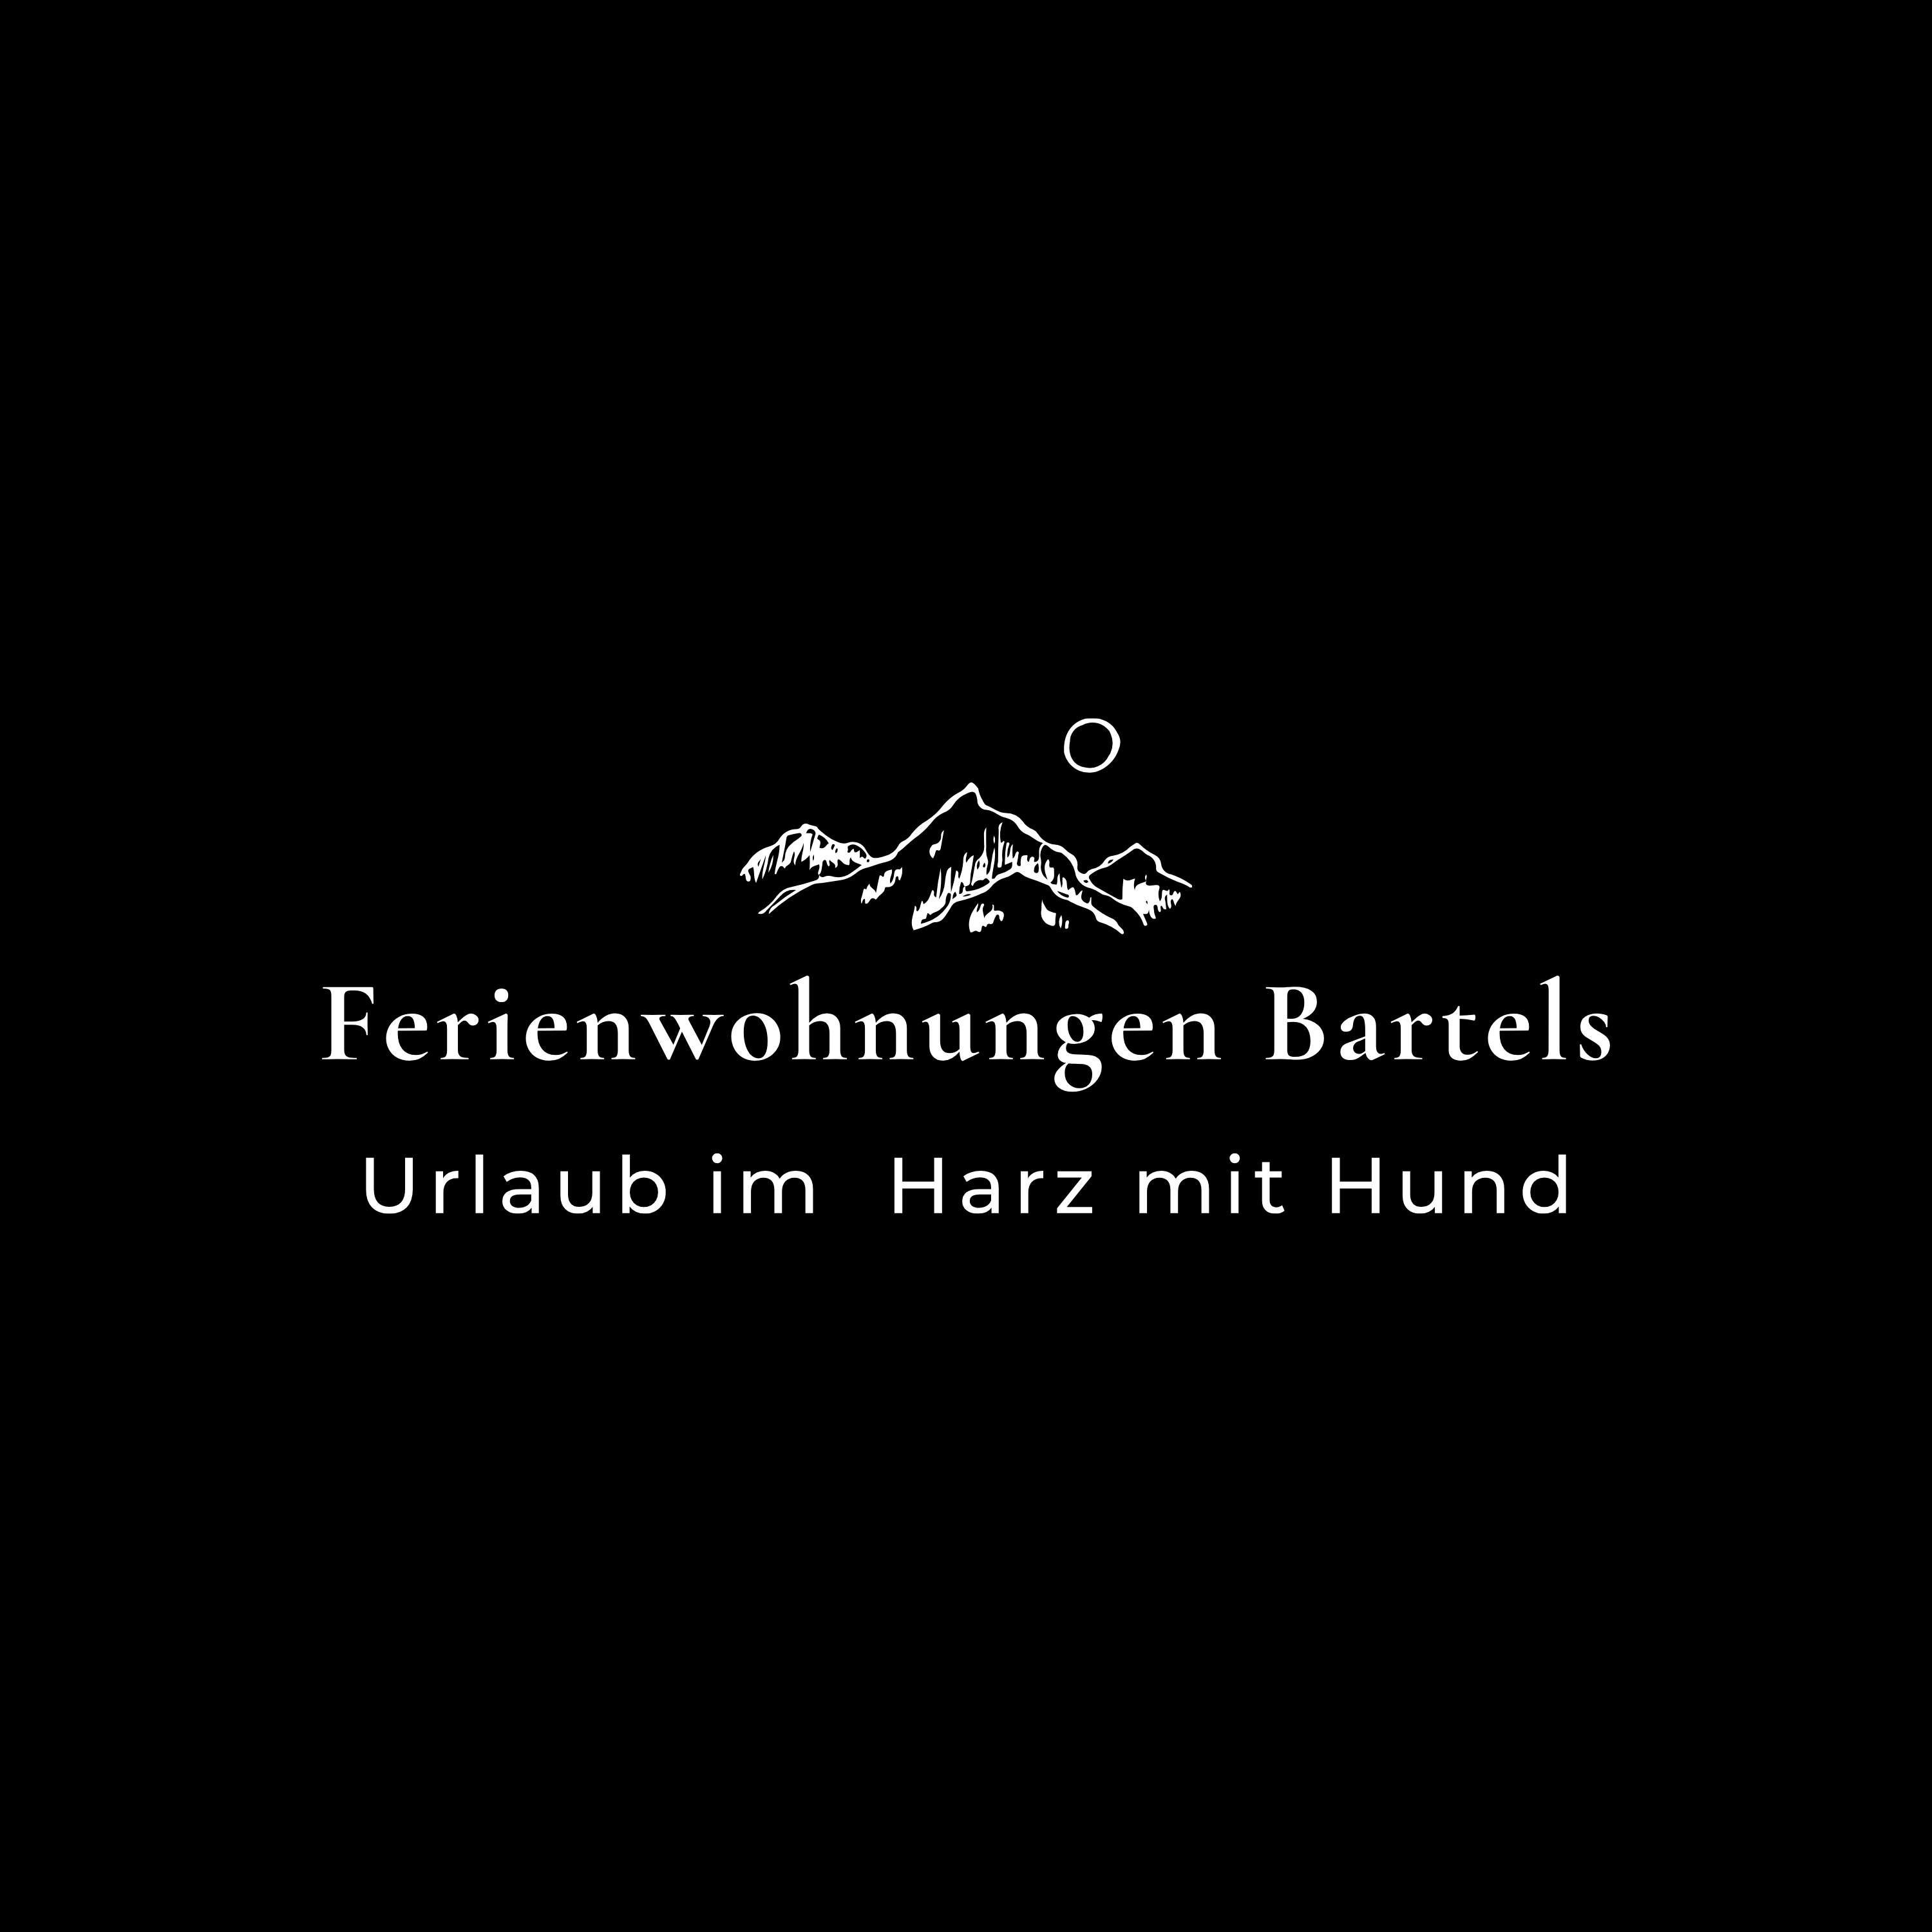 Ferienwohnungen Bartels in Goslar - Logo